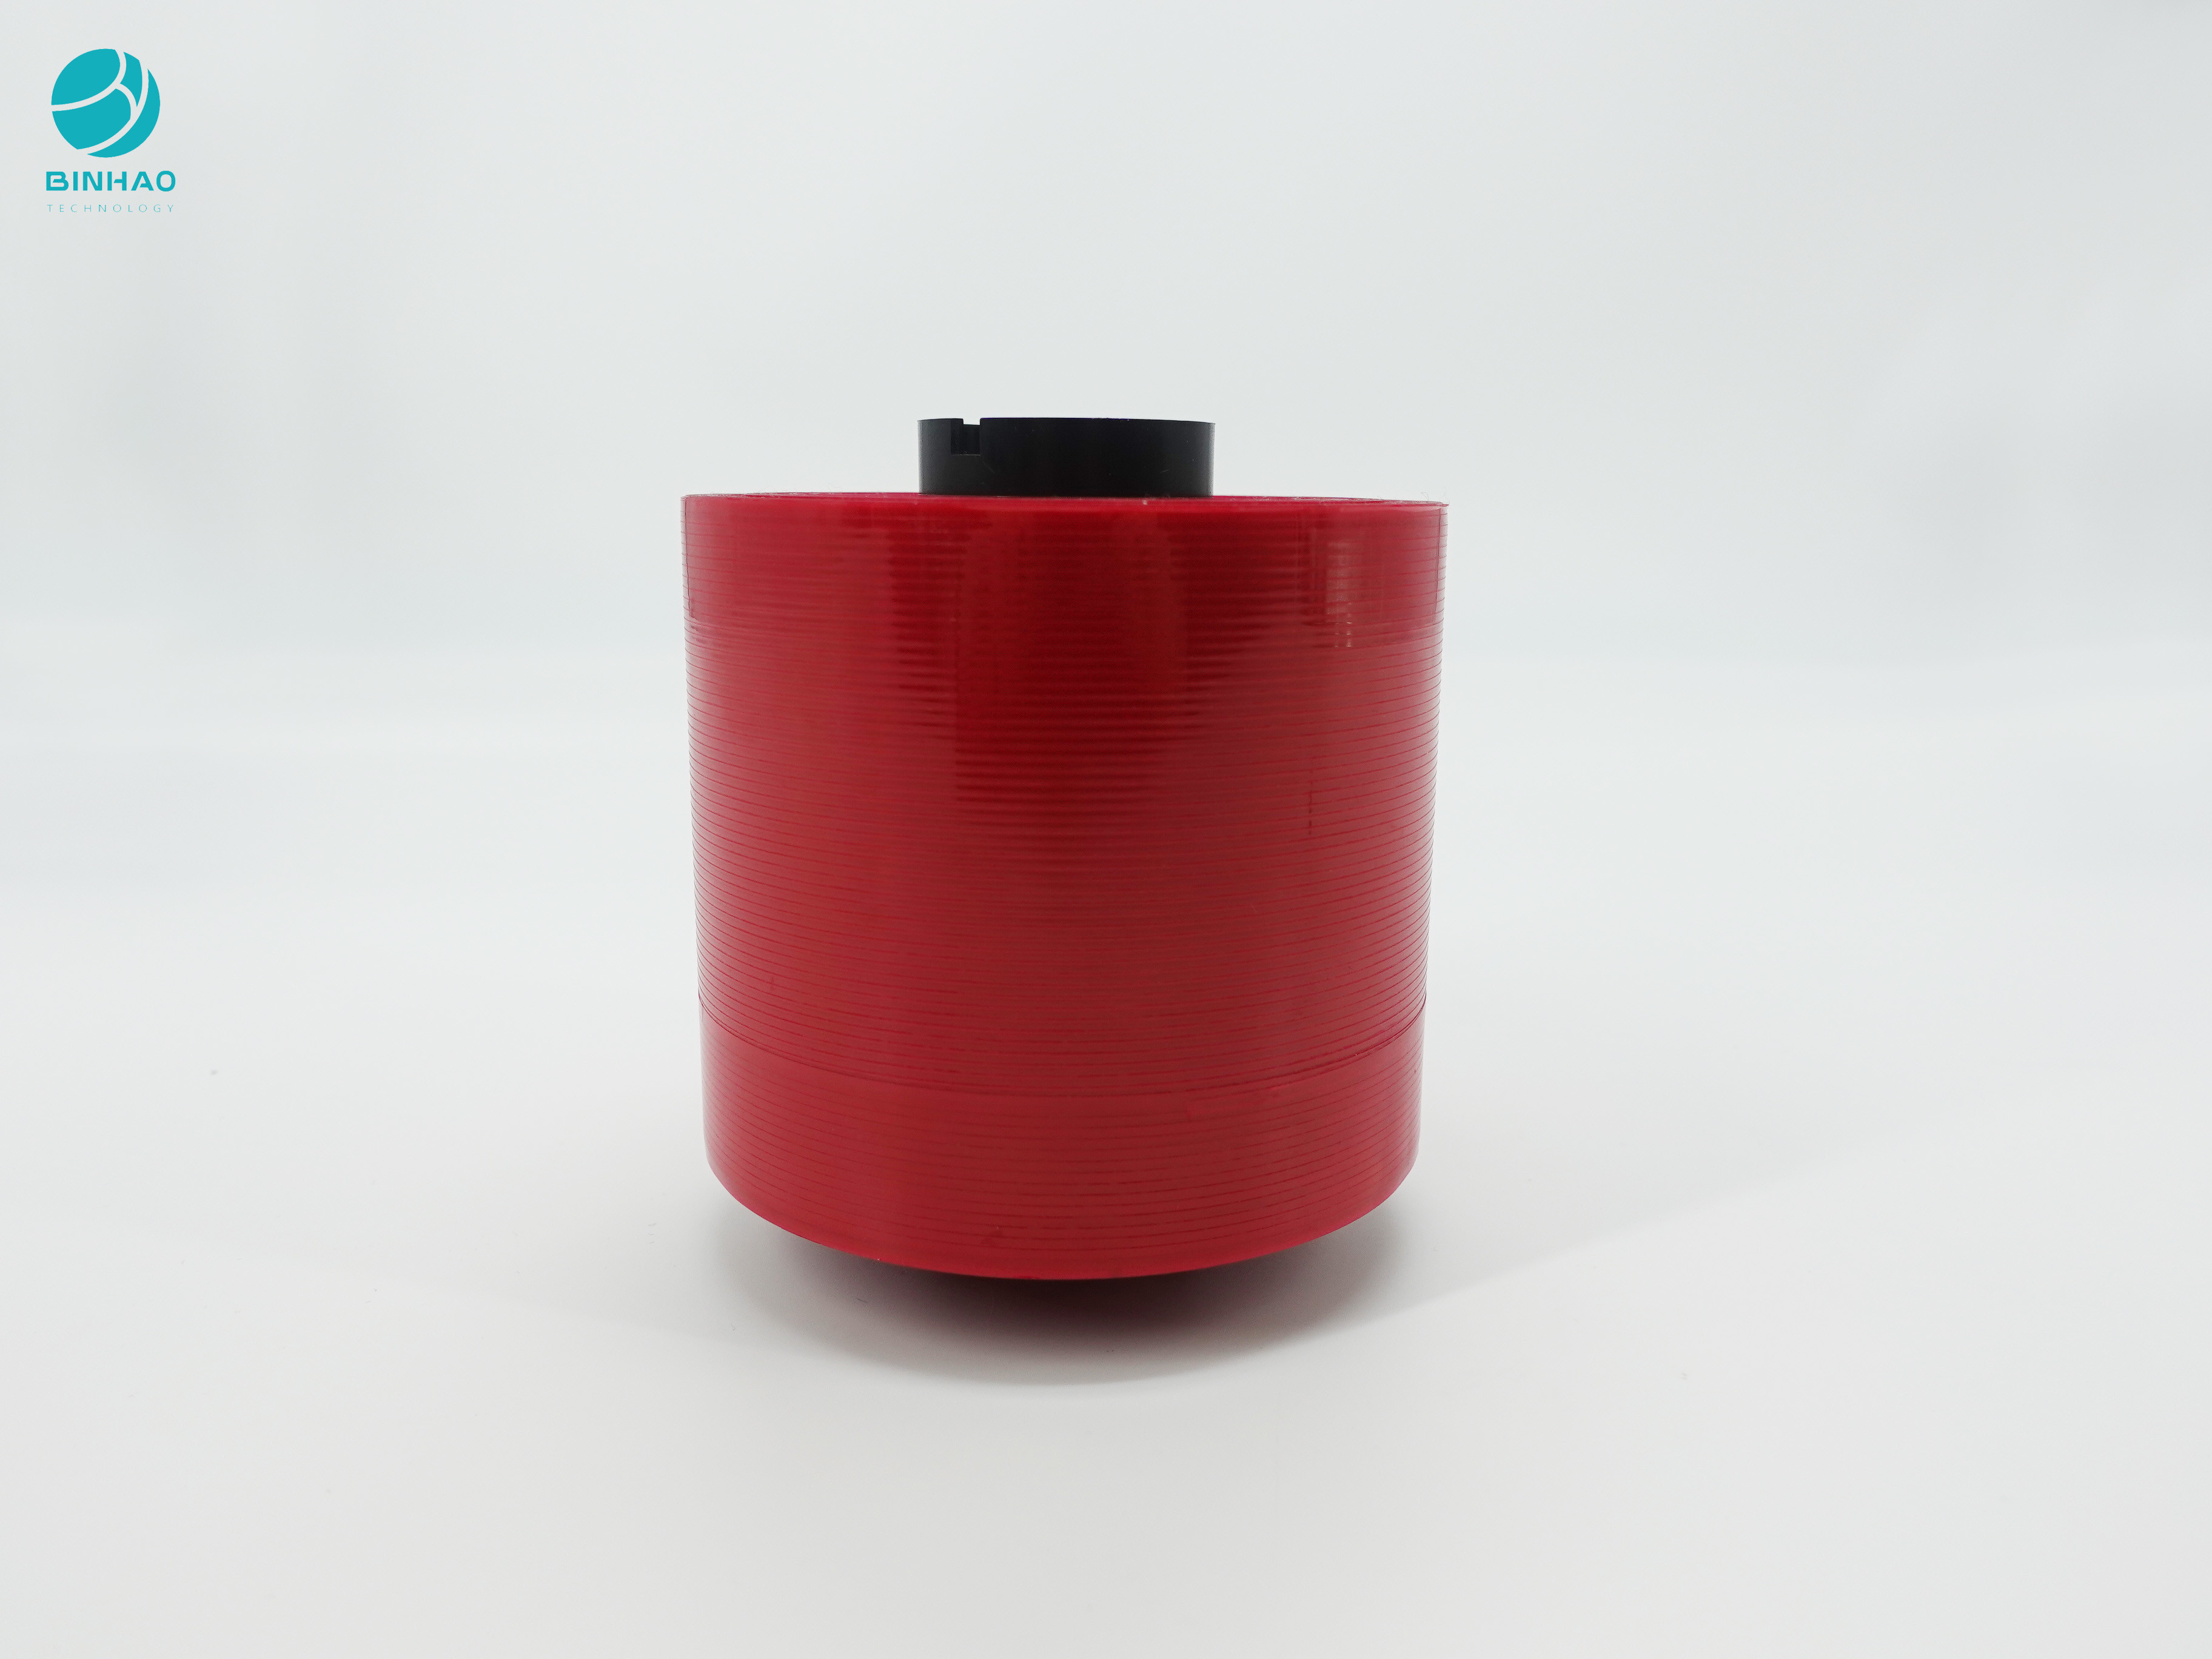 Băng keo bảo mật Bopp màu đỏ đậm 2,5mm để niêm phong Pakage và mở dễ dàng